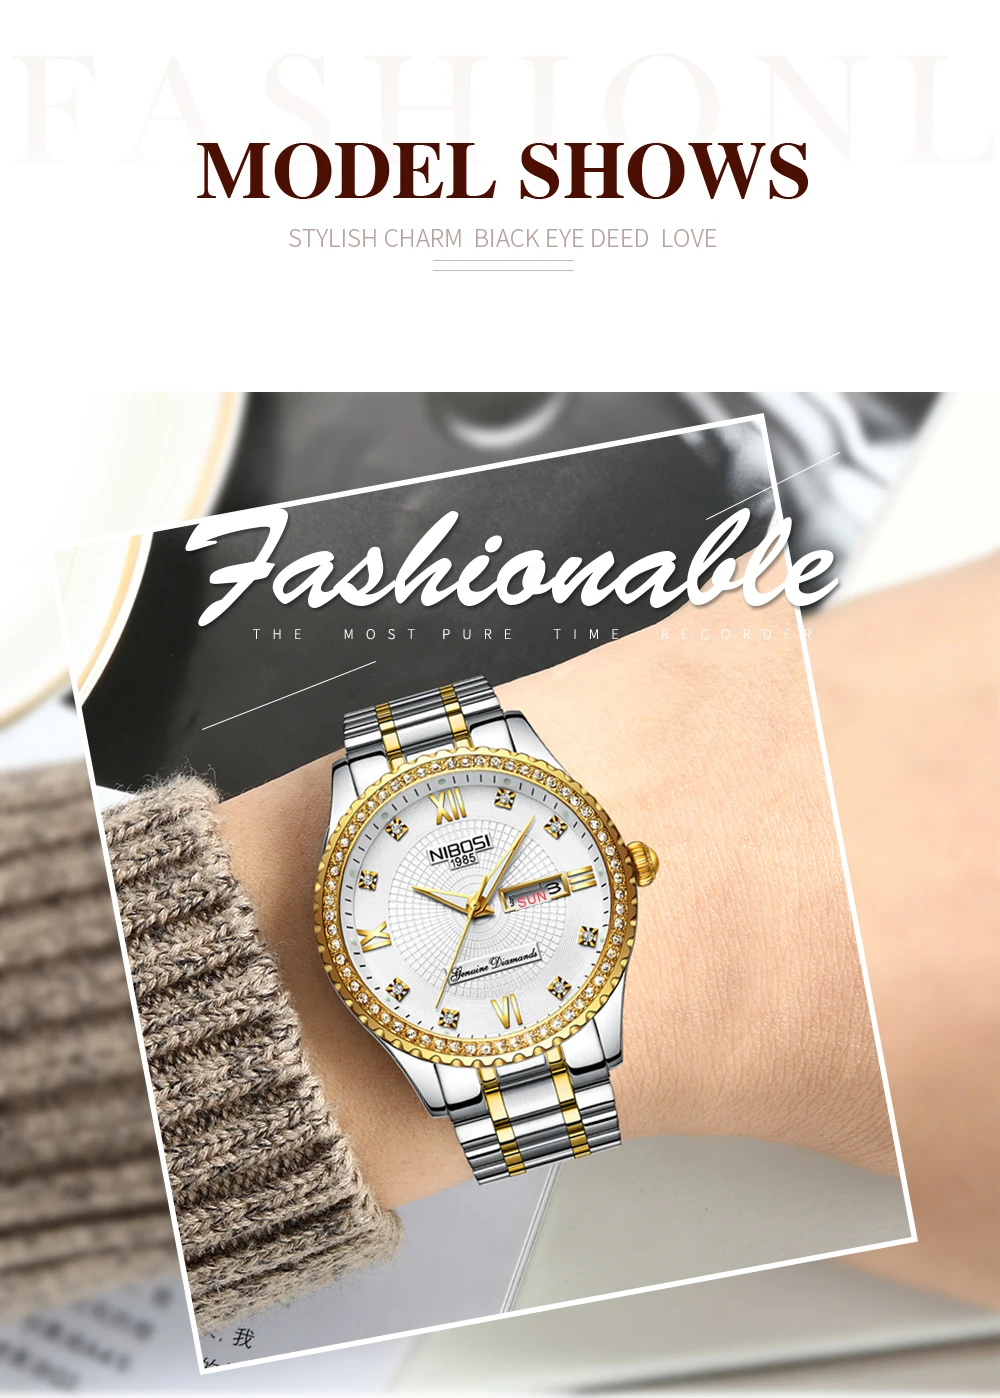 Мужские часы, золотые часы, мужские роскошные брендовые наручные часы, модные мужские часы с кристаллами, нержавеющая сталь, дата и неделя, Saat